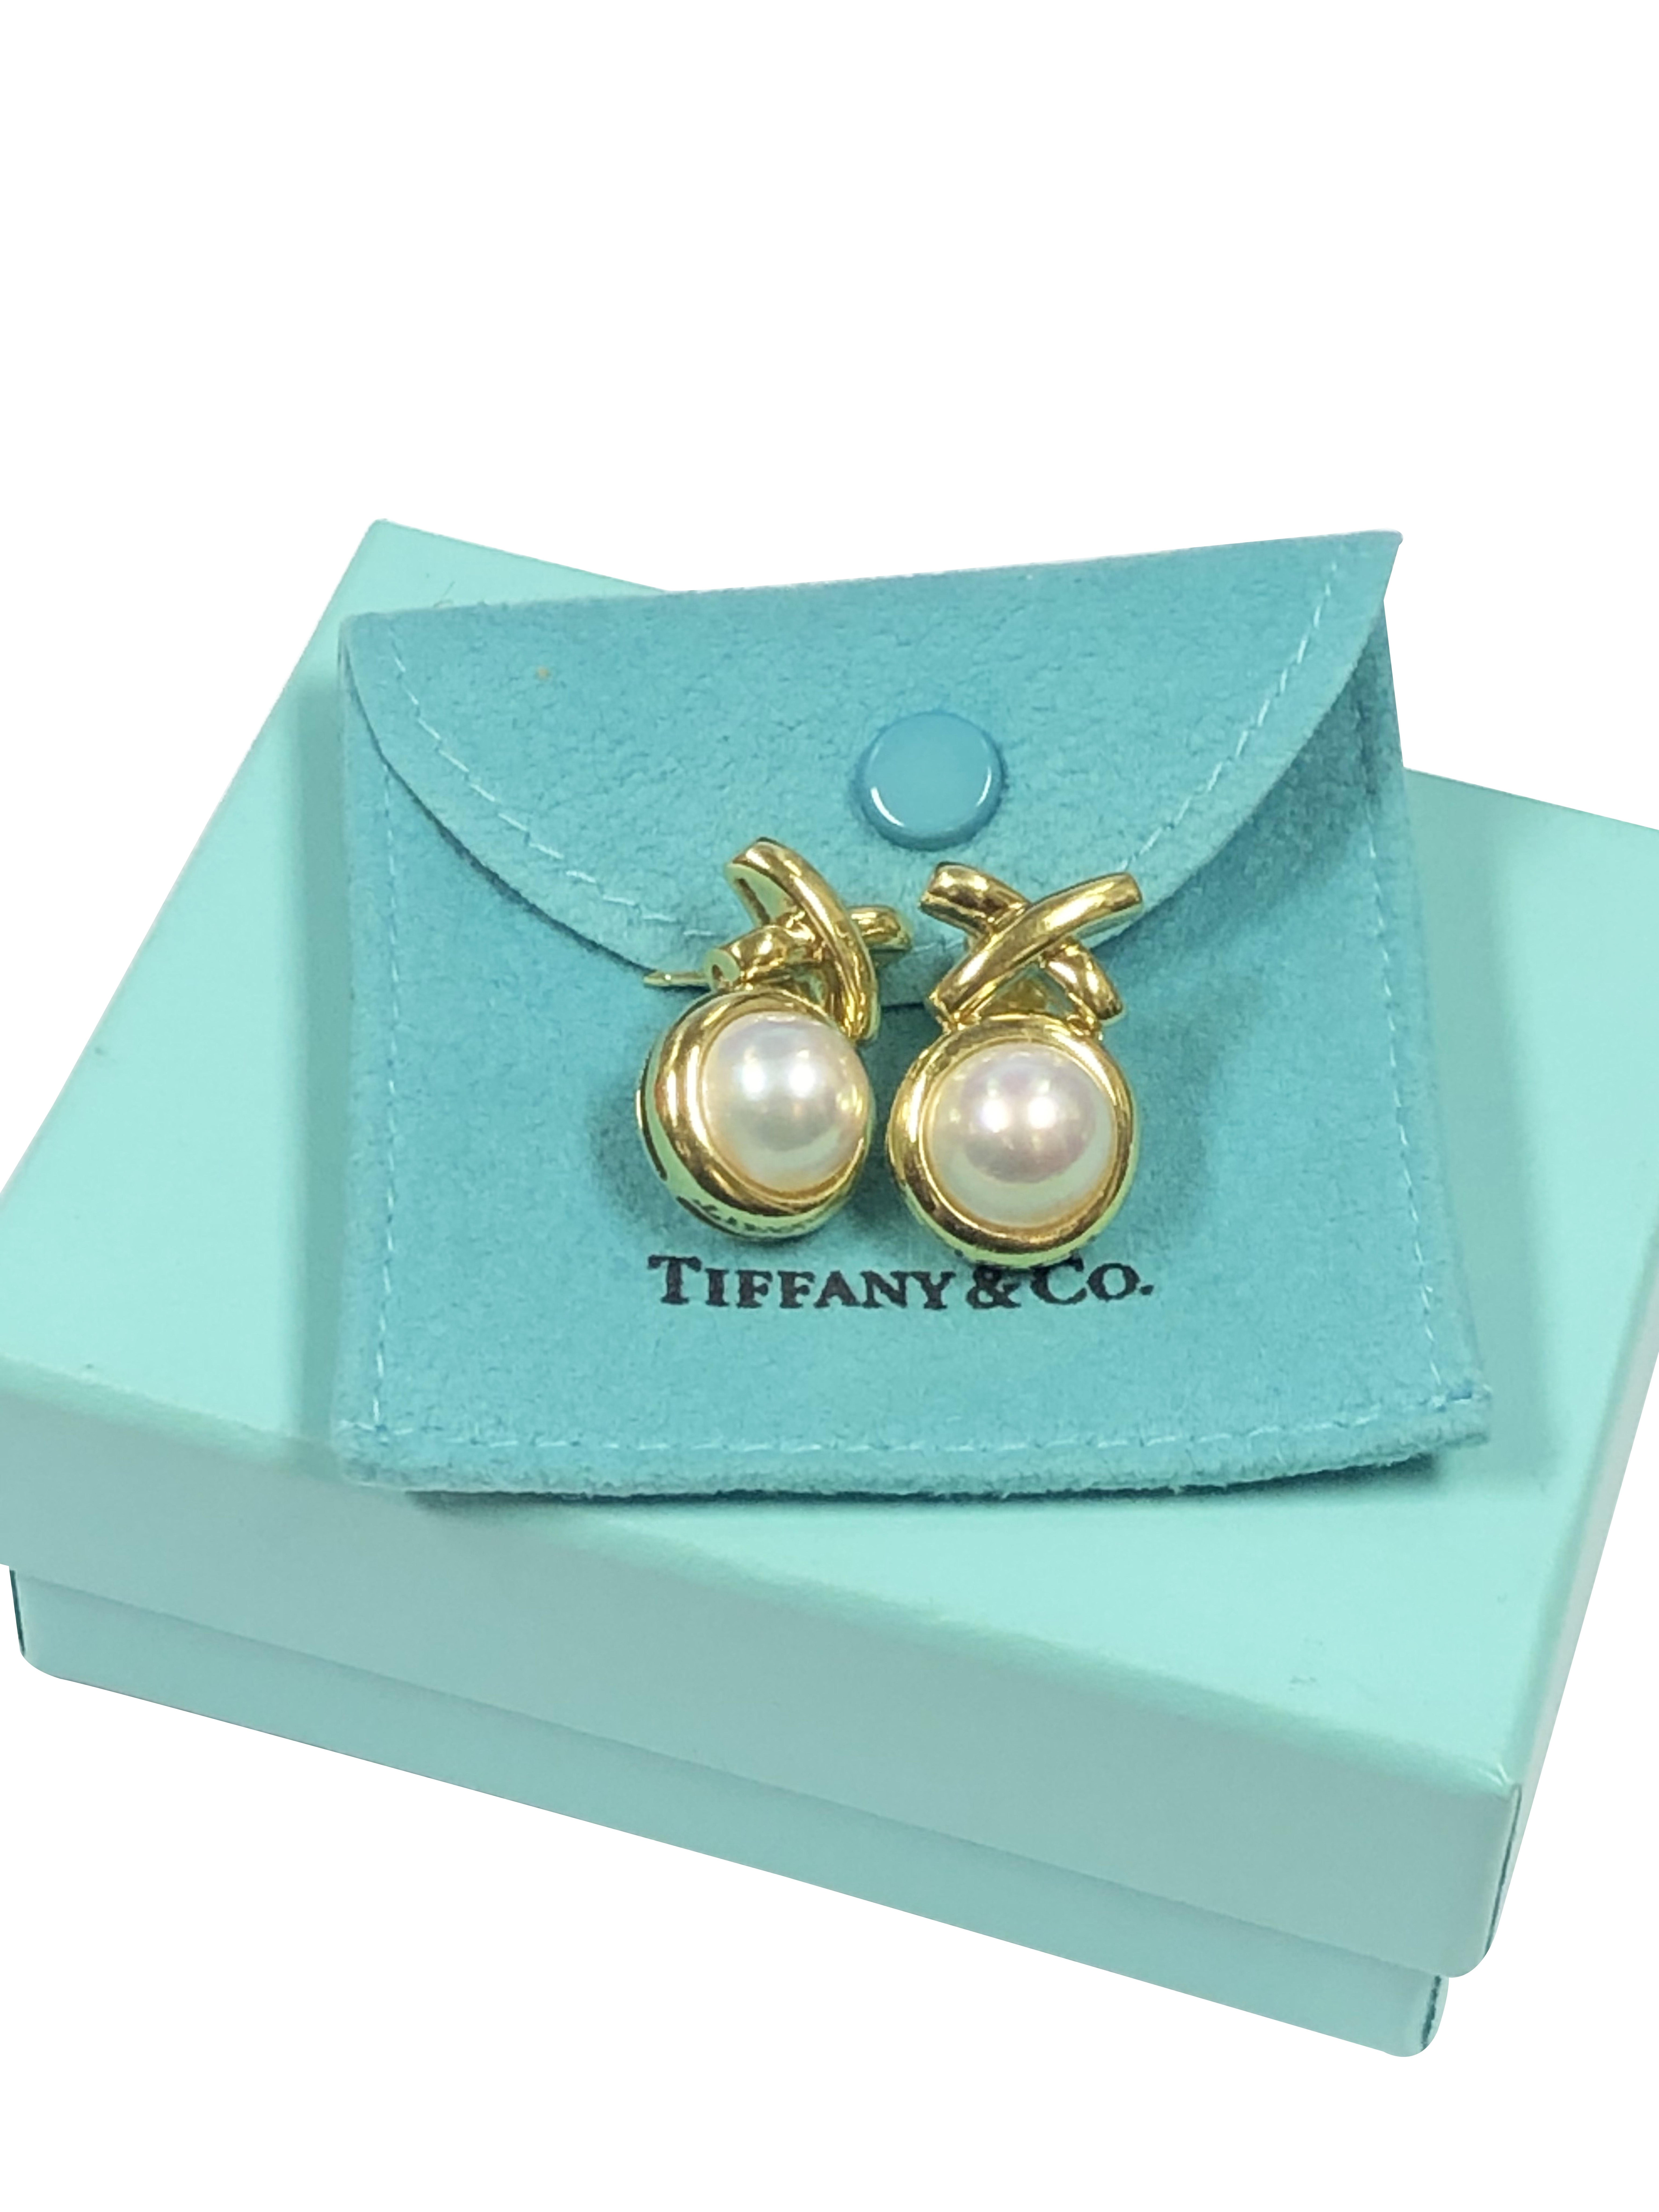 Circa 2010 Paloma Picasso für Tiffany & Company 18K Gelbgold X Collection Ohrringe, Messung 1 Zoll in der Länge X 5/8 Zoll breit, mit einem 10 M.M. gesetzt. Mabe Perle von sehr feiner Farbe und Glanz. Sie werden in einem Reiseetui aus